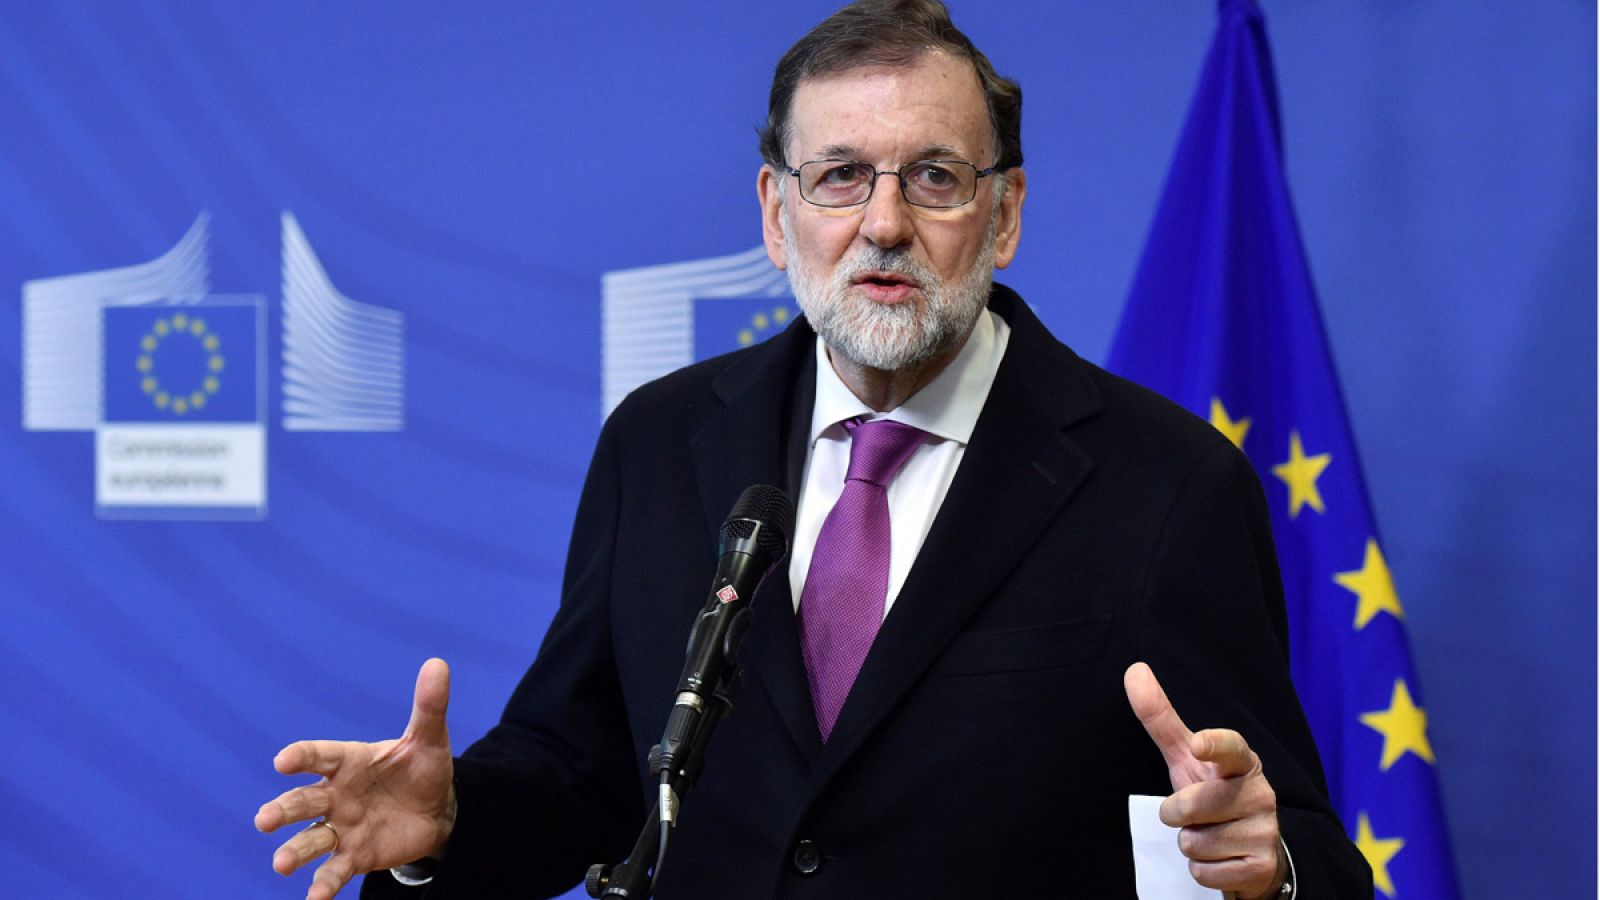 El presidente del Gobierno, Mariano Rajoy, durante una rueda de prensa en la conferencia sobre el Sahel que se celebra en Bruselas